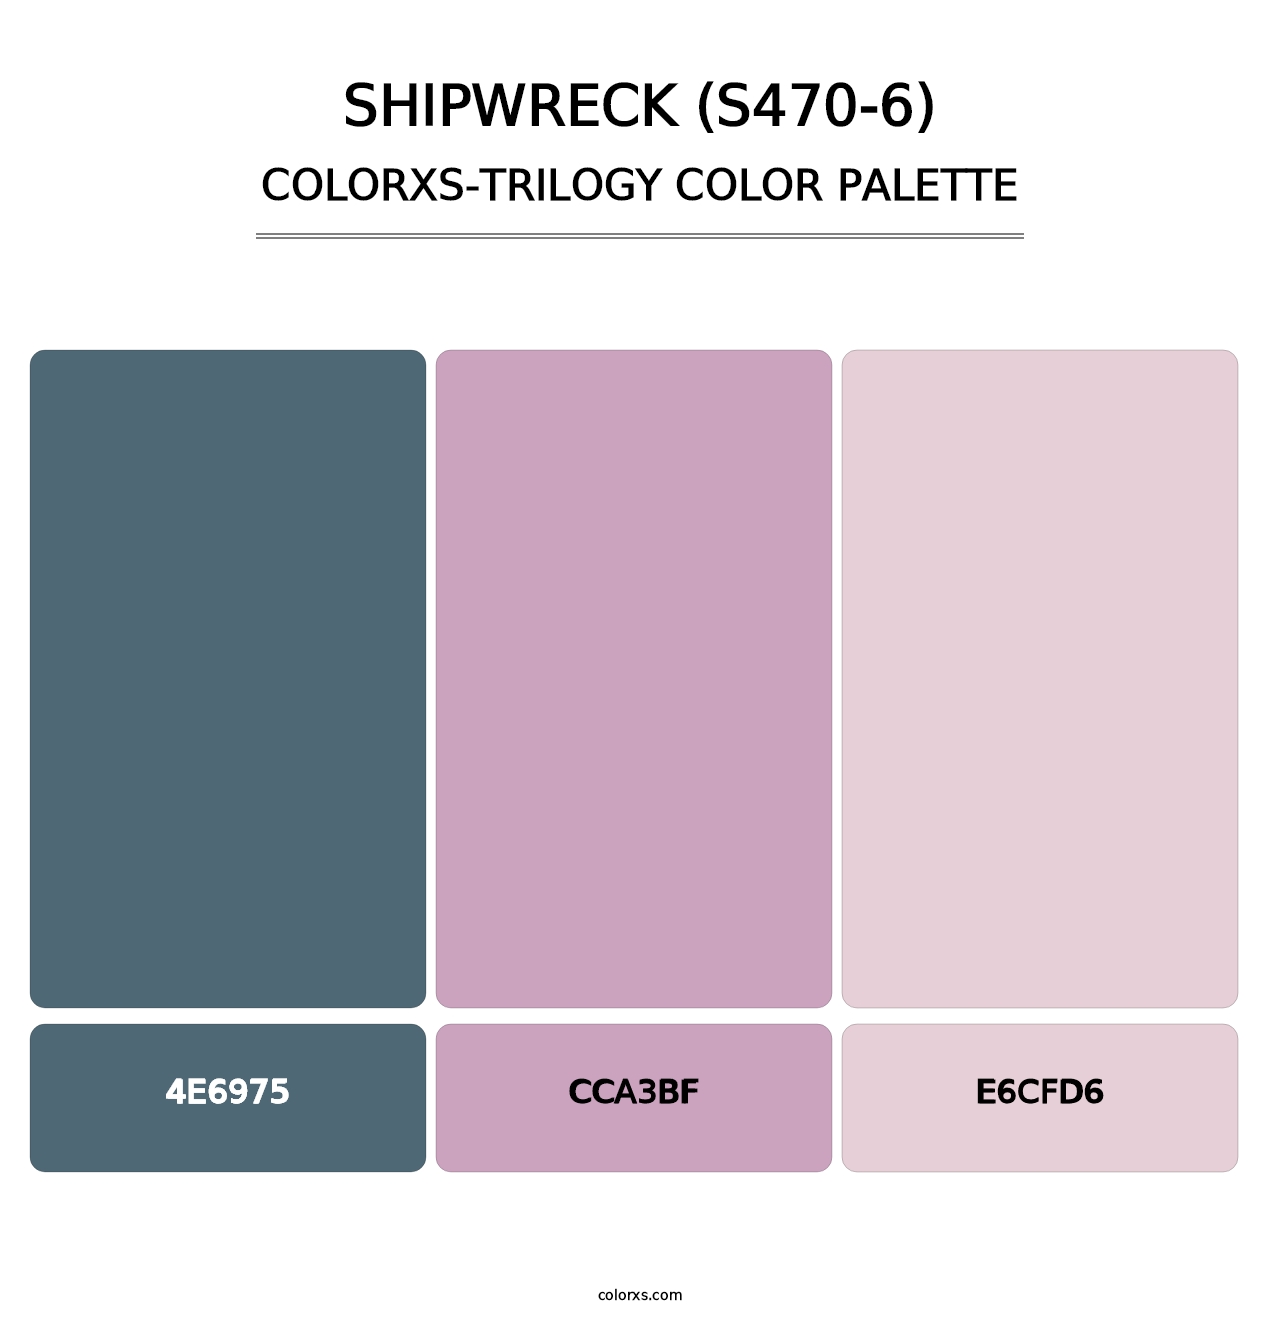 Shipwreck (S470-6) - Colorxs Trilogy Palette